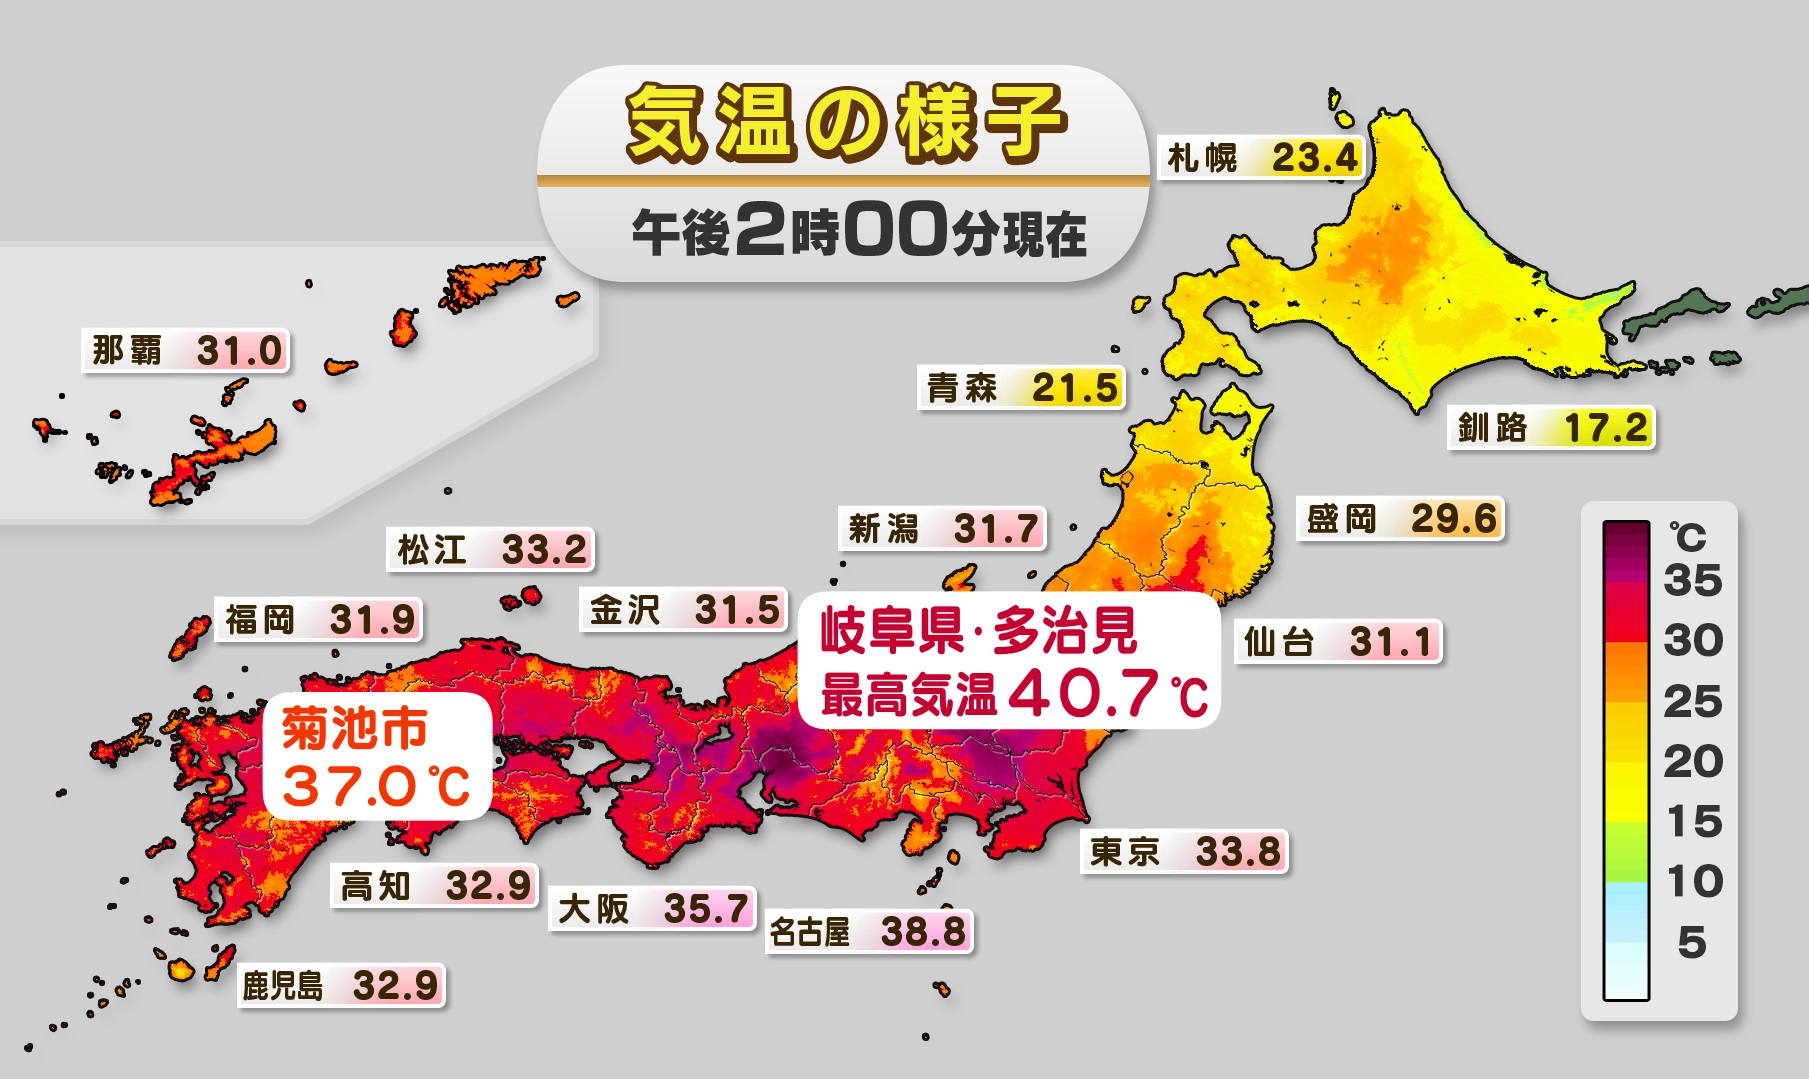 岐阜で40 超え 熊本も猛暑 空色日記